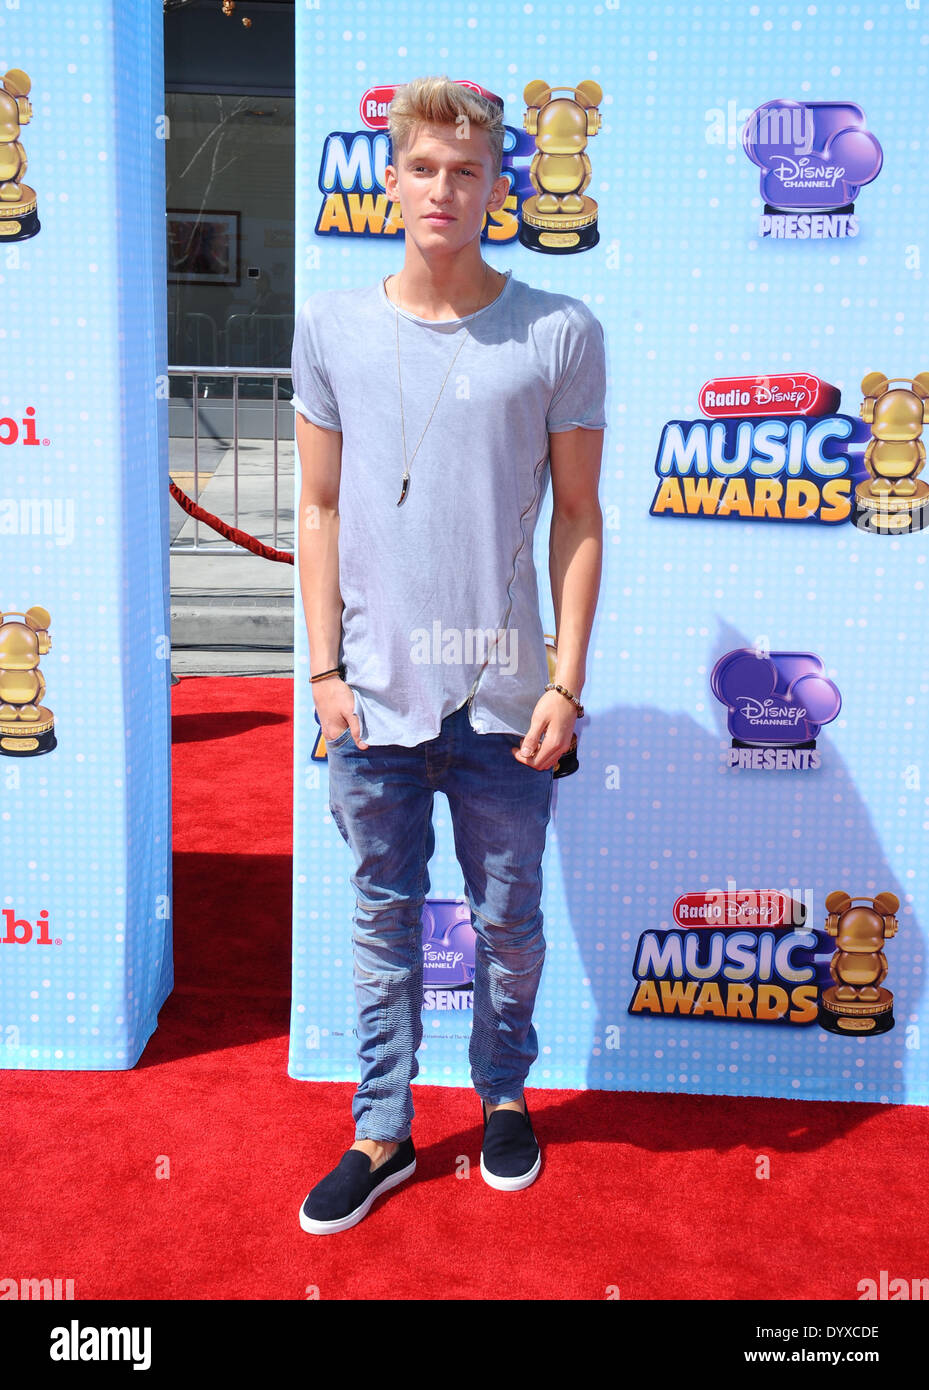 Los Angeles, Kalifornien, USA. 26. April 2014. Cody Simpson besucht die Disney Channel 2014 Radio Disney Music Awards - Ankünfte im Nokia Theatre L.A. Live in Los Angeles, Kalifornien am 26. April 2014 statt. 2014-Credit: D. Long/Globe Photos/ZUMAPRESS.com/Alamy Live-Nachrichten Stockfoto